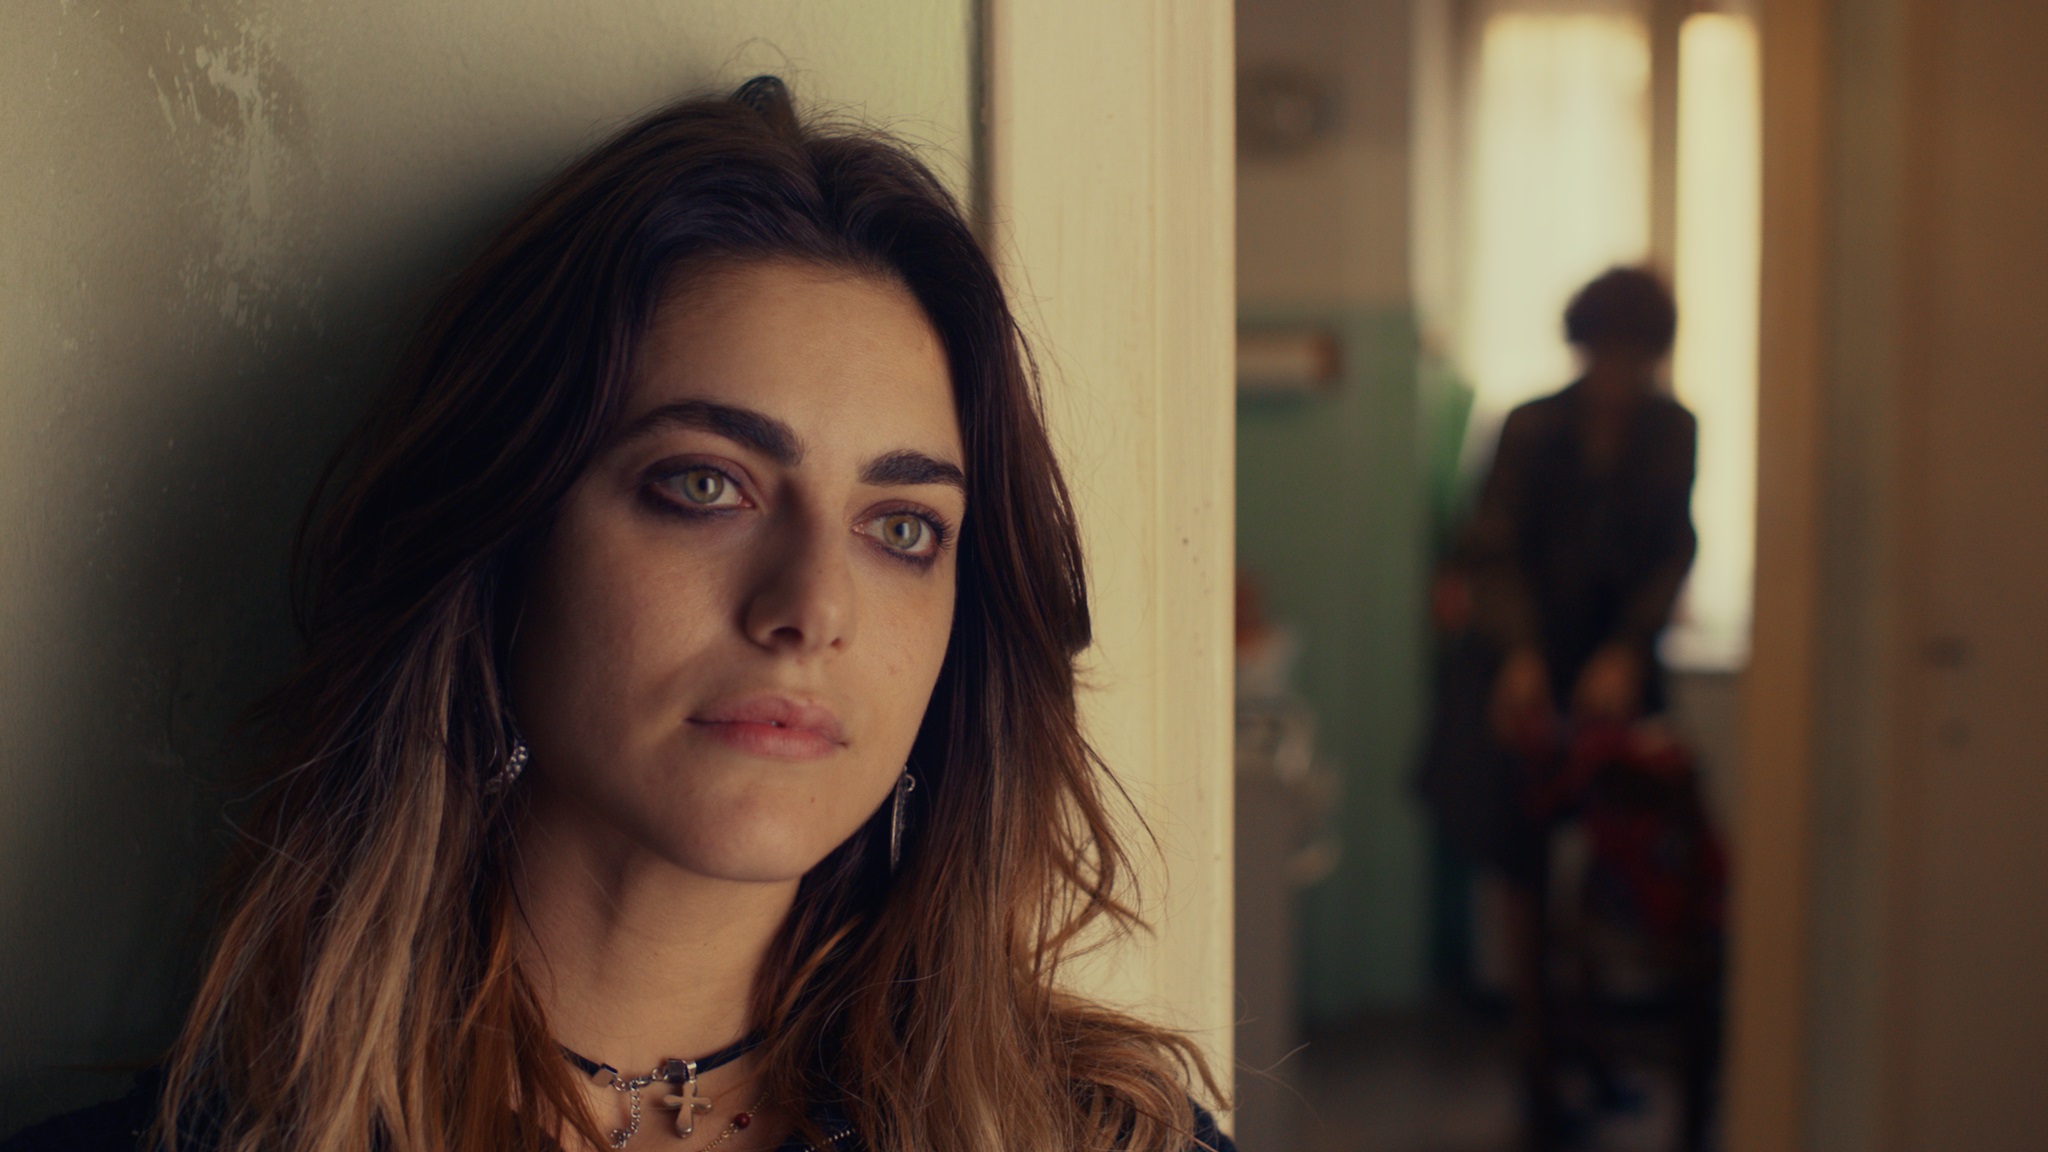 The New Sicilian Movie Star MIRIAM LEONE In An All Italian Comedy: Love At Home By Emiliano Corapi